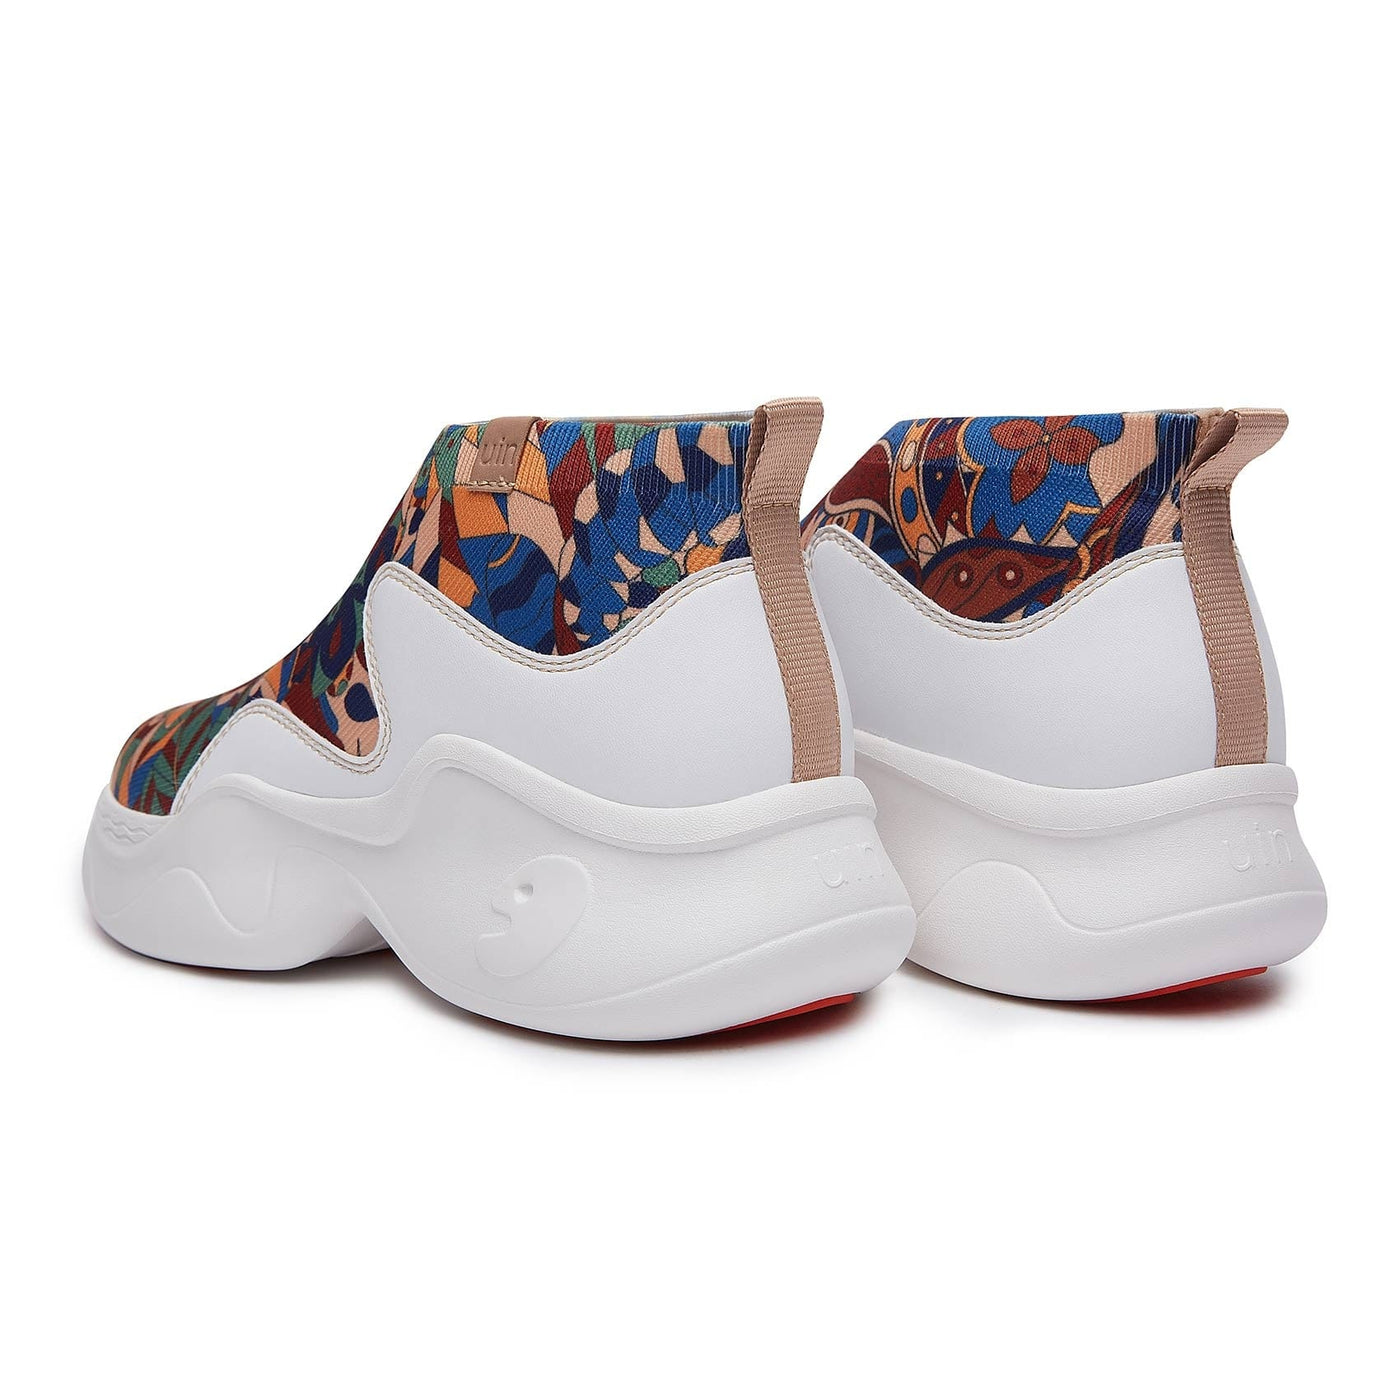 UIN Footwear Women Summer-Meadow Palma II Women Canvas loafers